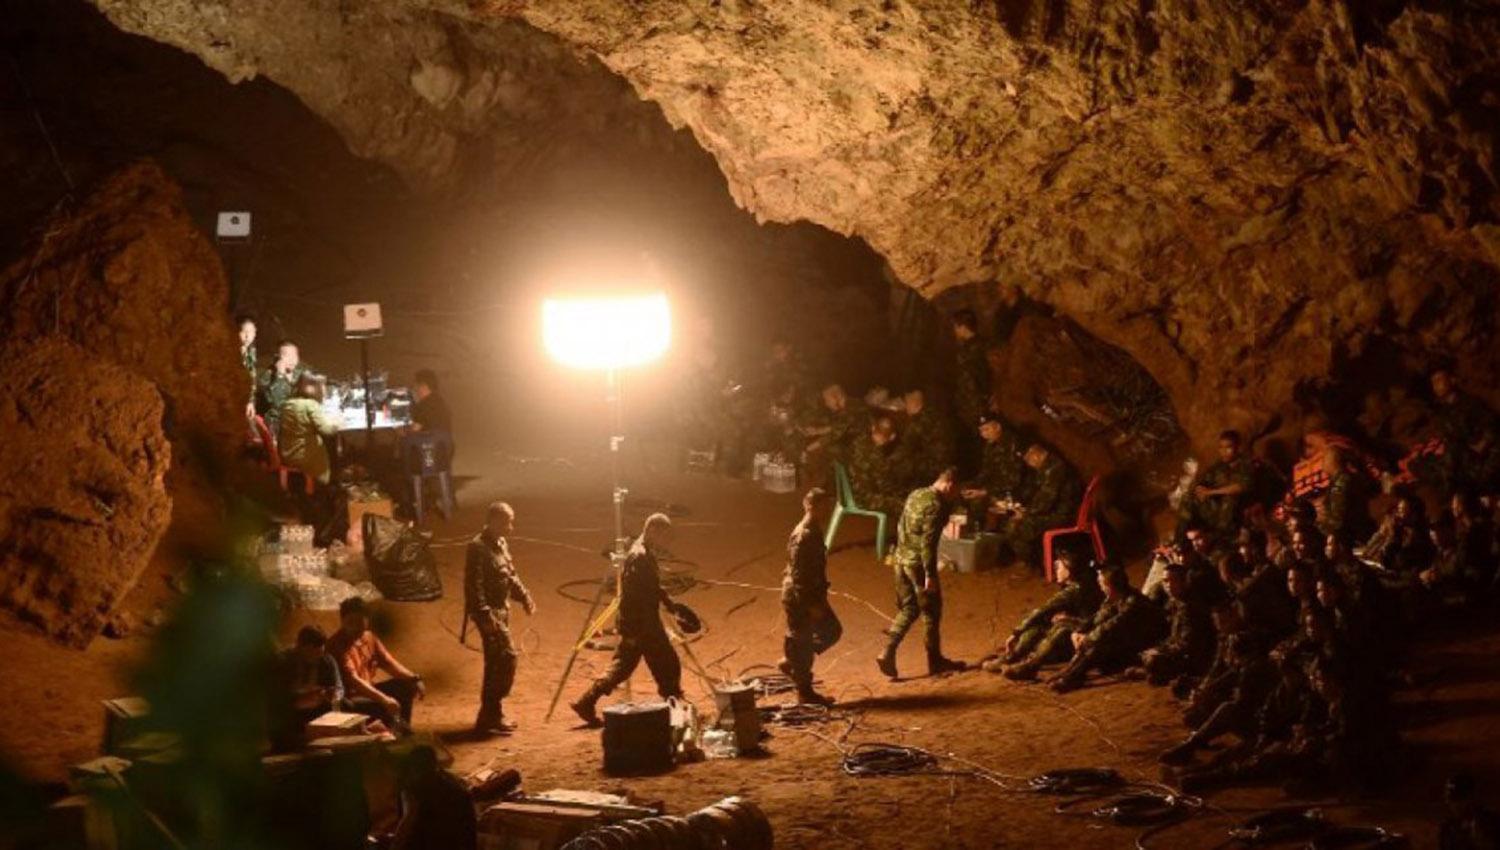 TAILANDIA. Expertos realizaron una búsqueda intensa para rastrear al grupo atrapado en una cueva. FOTO TOMADA DE MINUTOUNO.COM.